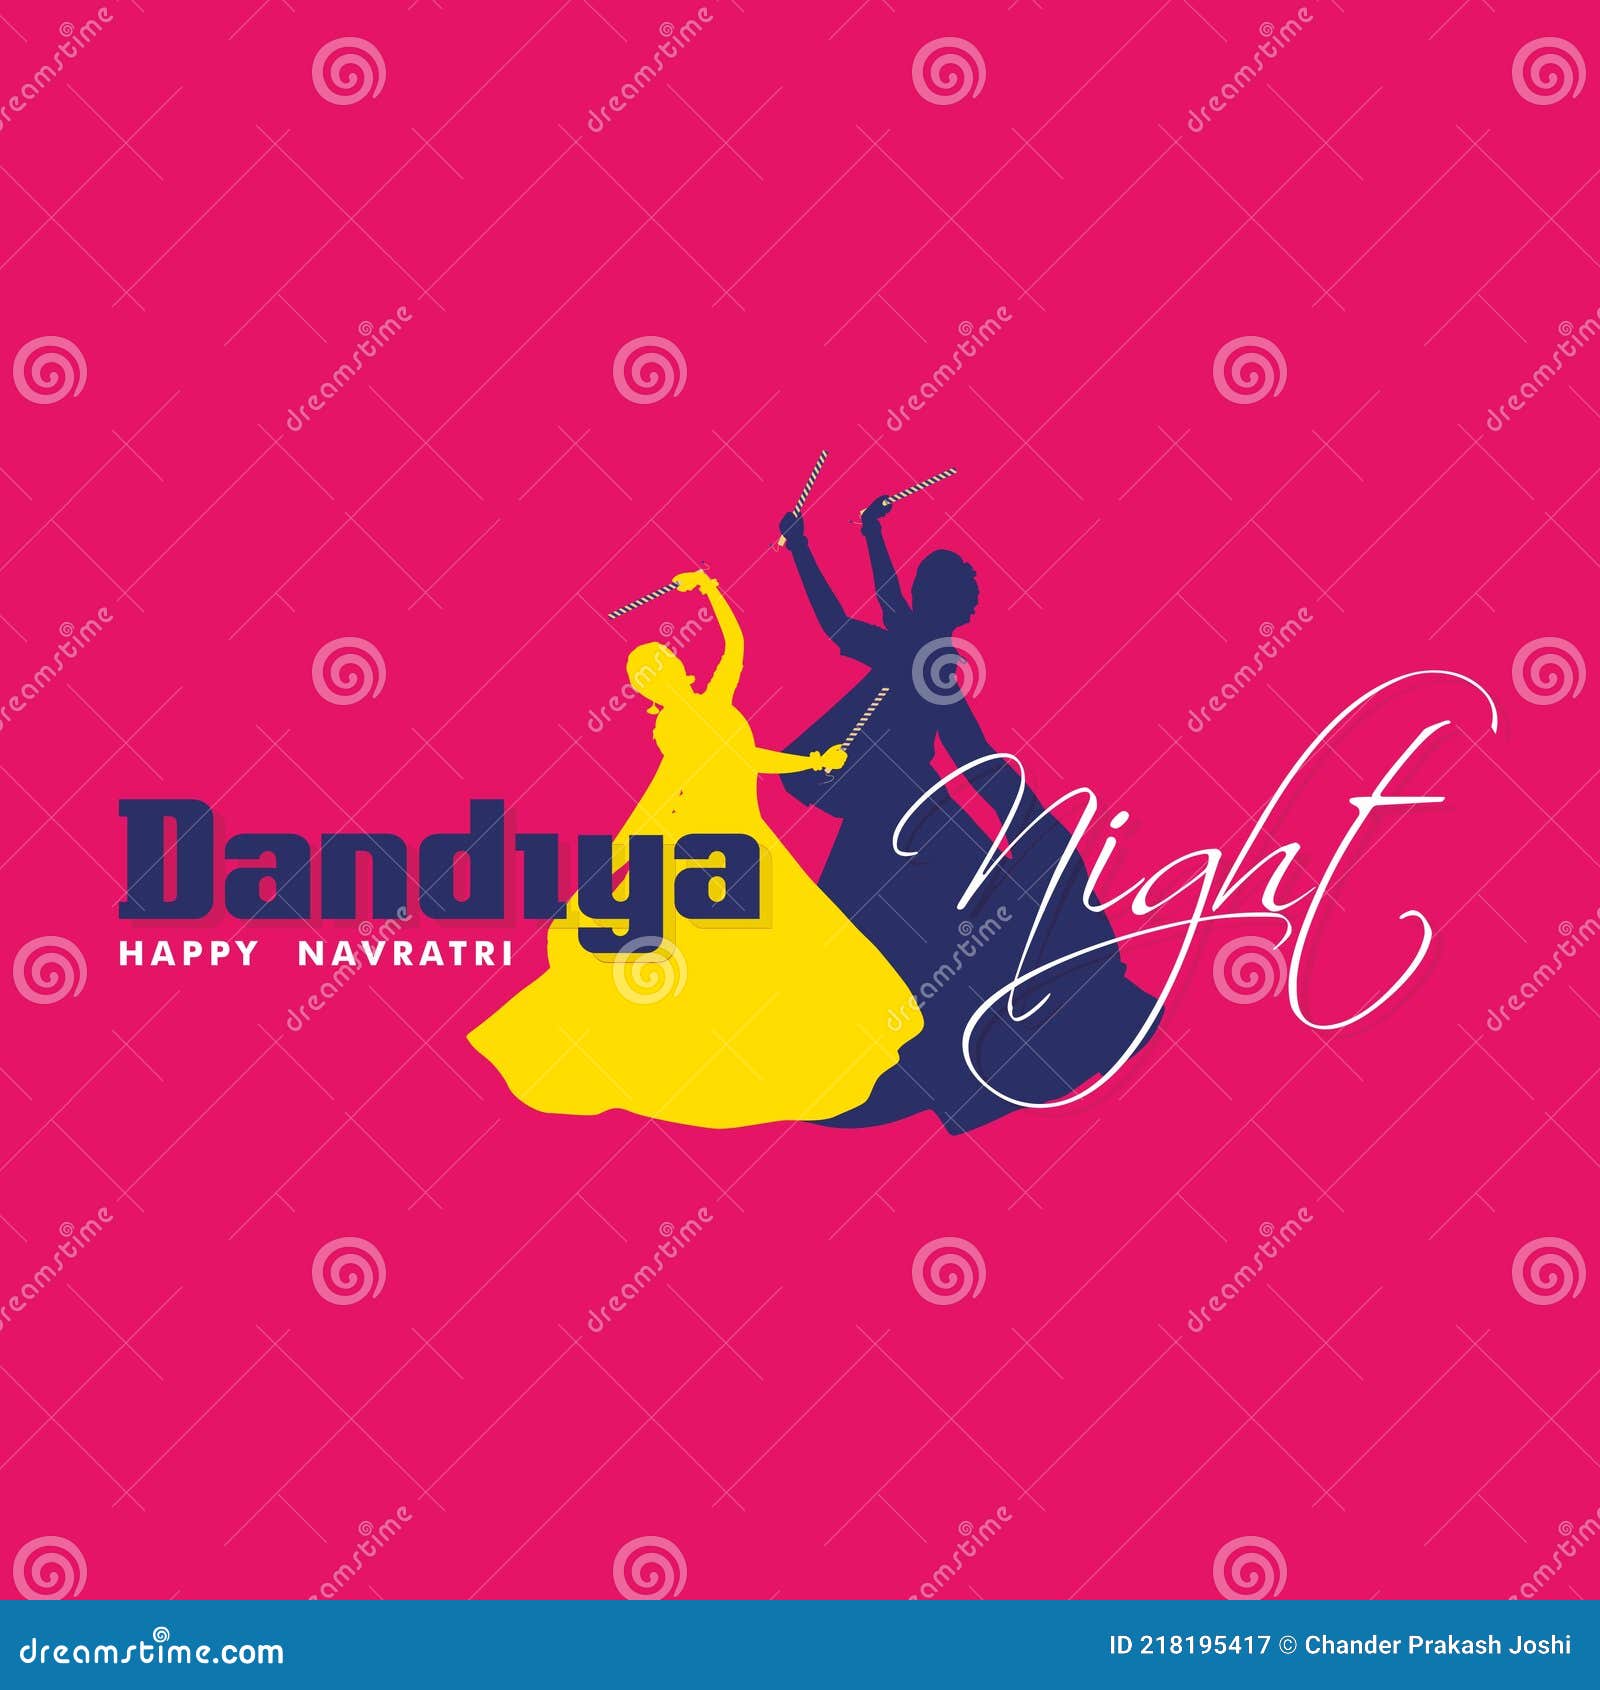 Dandiya png images | PNGWing